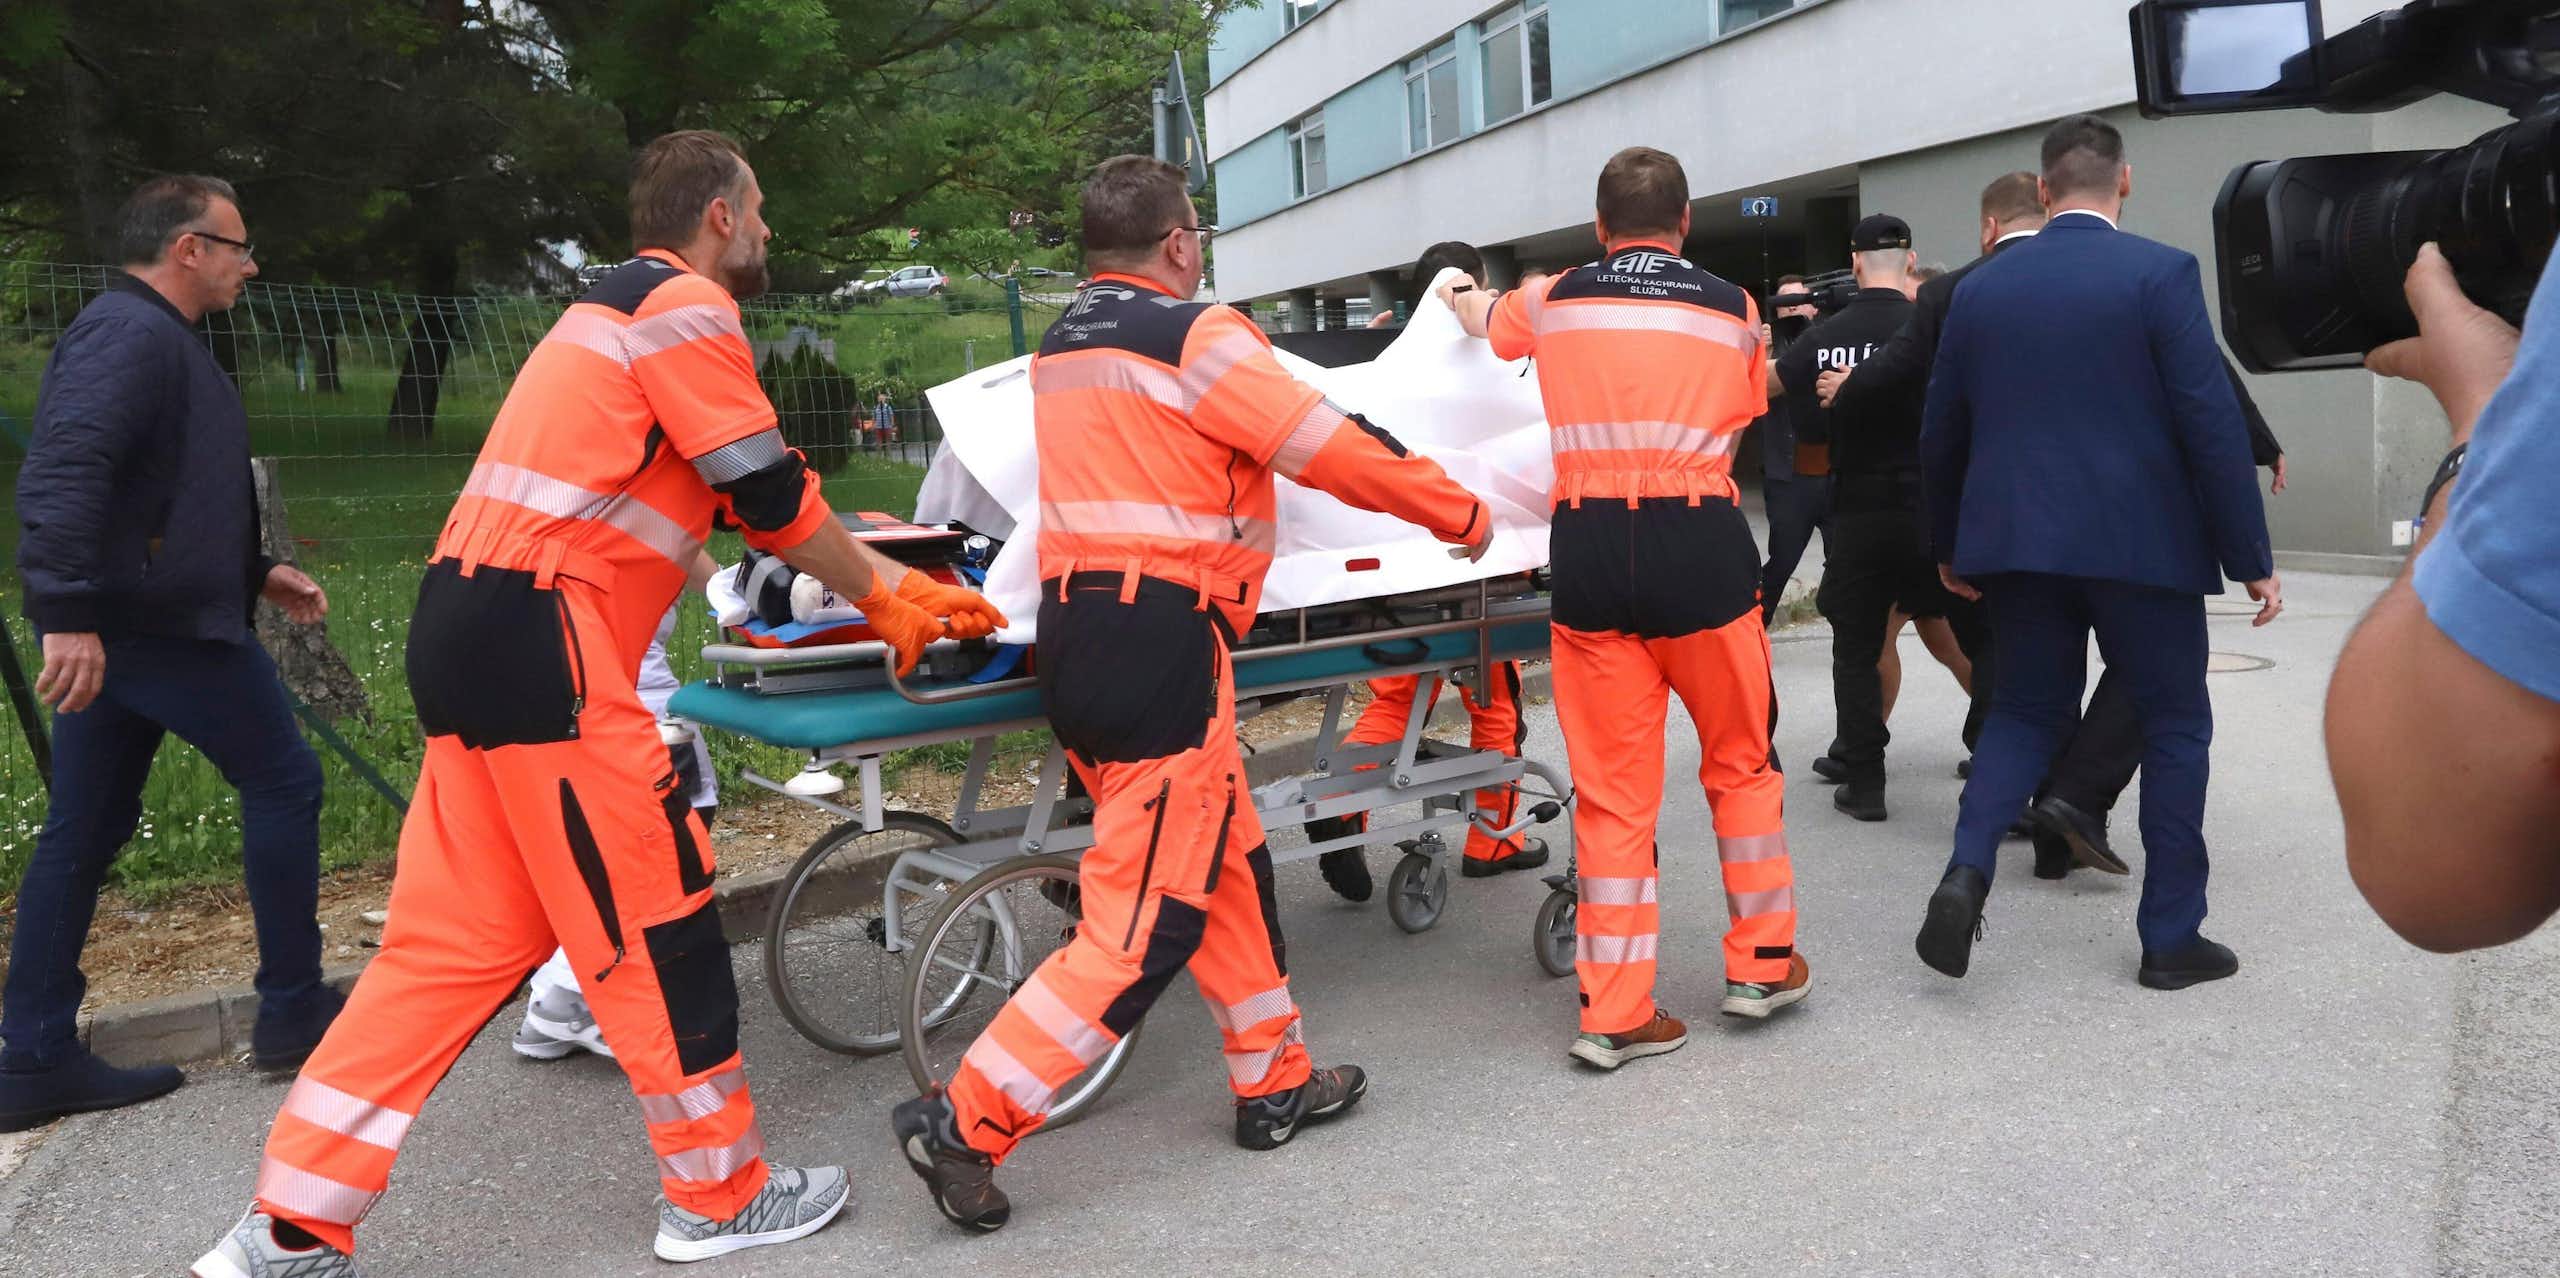 Paramedics wheeling a stretcher into a hospital.